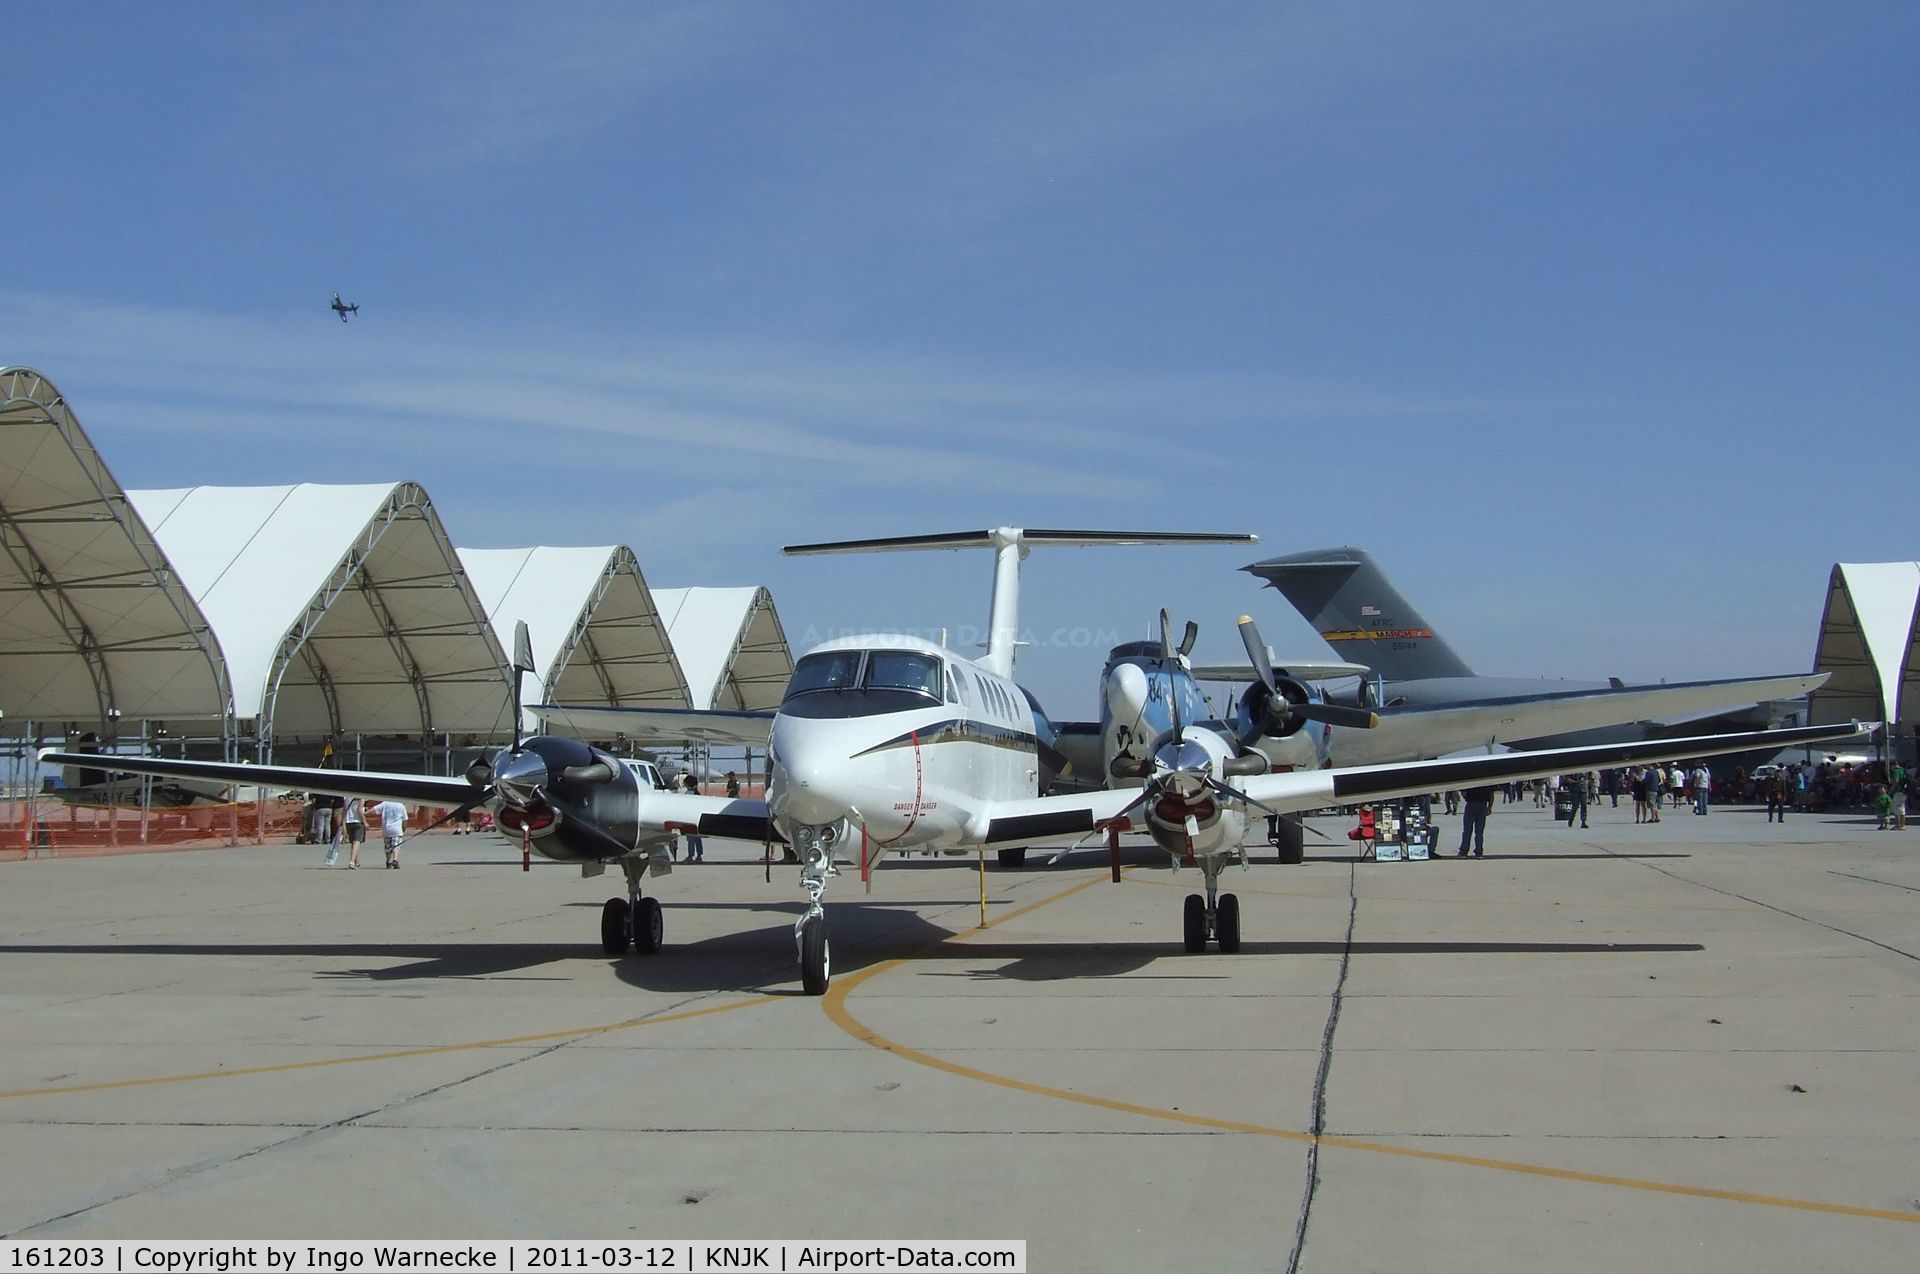 161203, Beech UC-12B Huron C/N BJ-19, Beechcraft UC-12B Huron of the US Navy at the 2011 airshow at El Centro NAS, CA